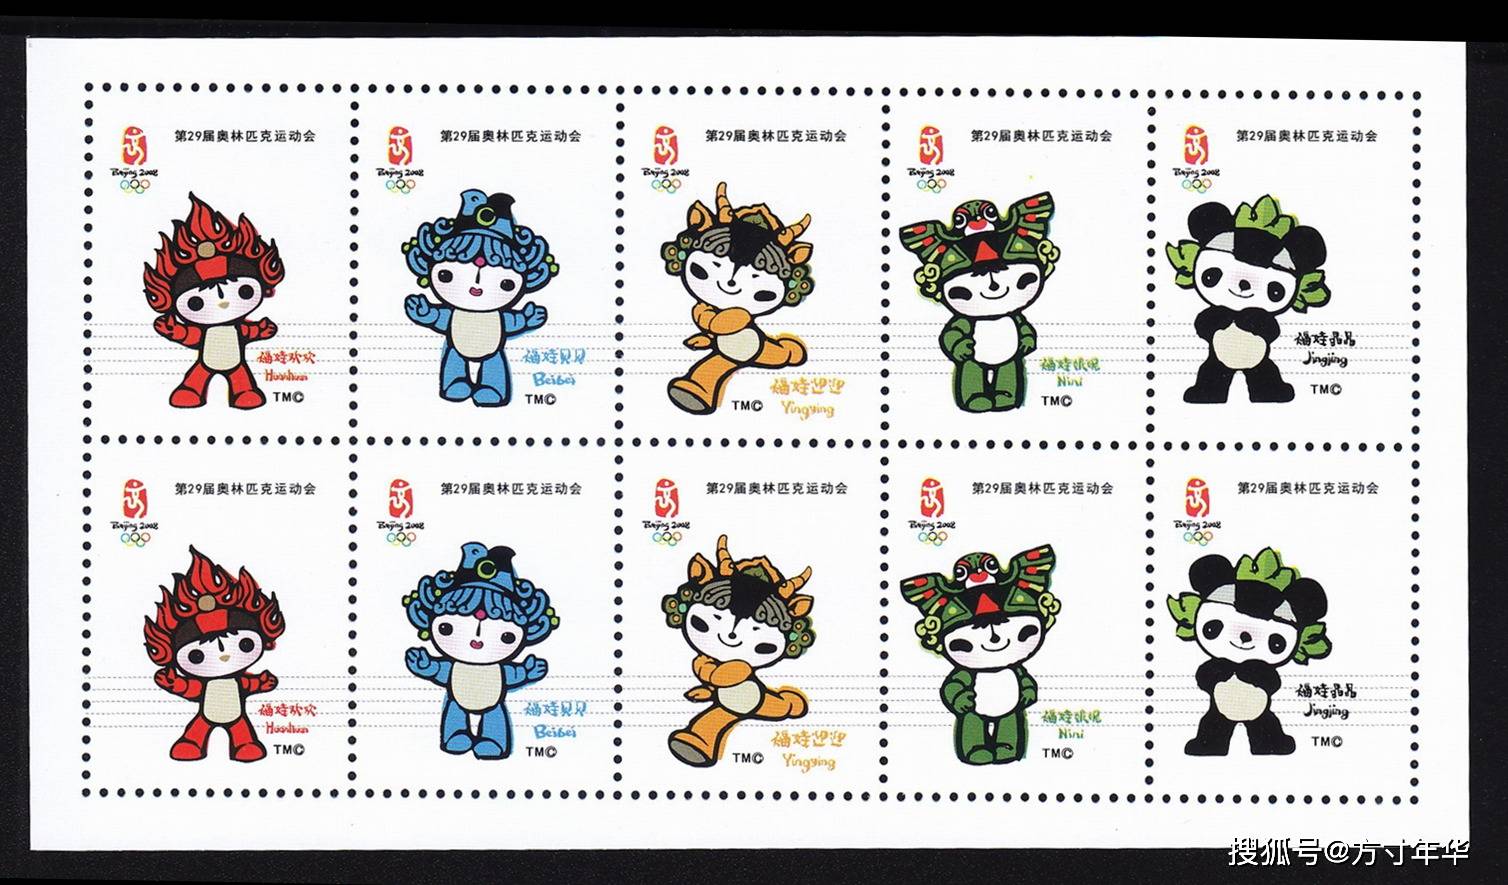 原创东京奥运会已经开幕,带大家通过邮票来看来回顾,北京奥运会